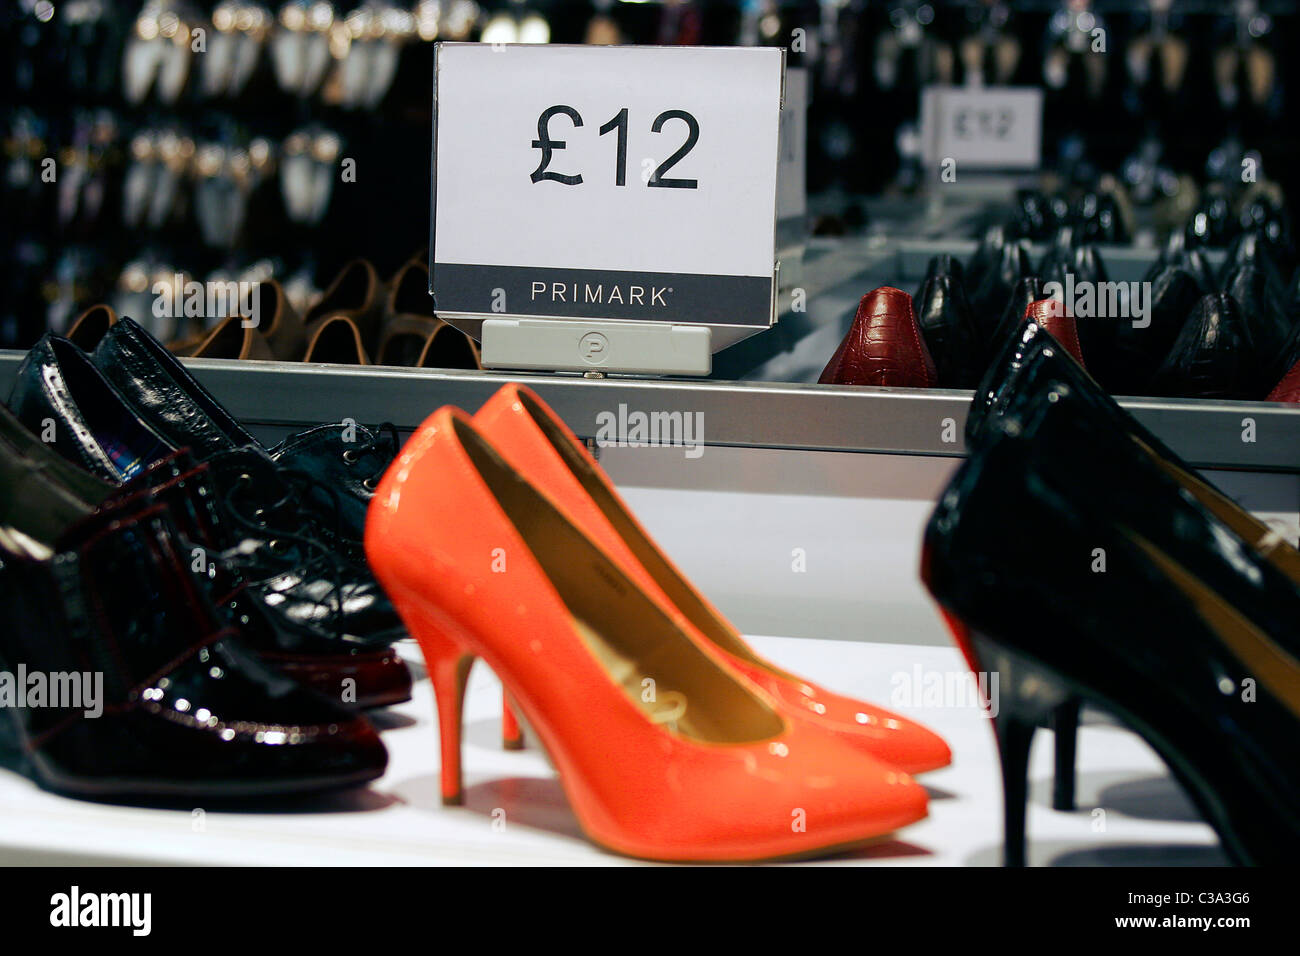 Le scarpe isola in un Primark store Foto stock - Alamy